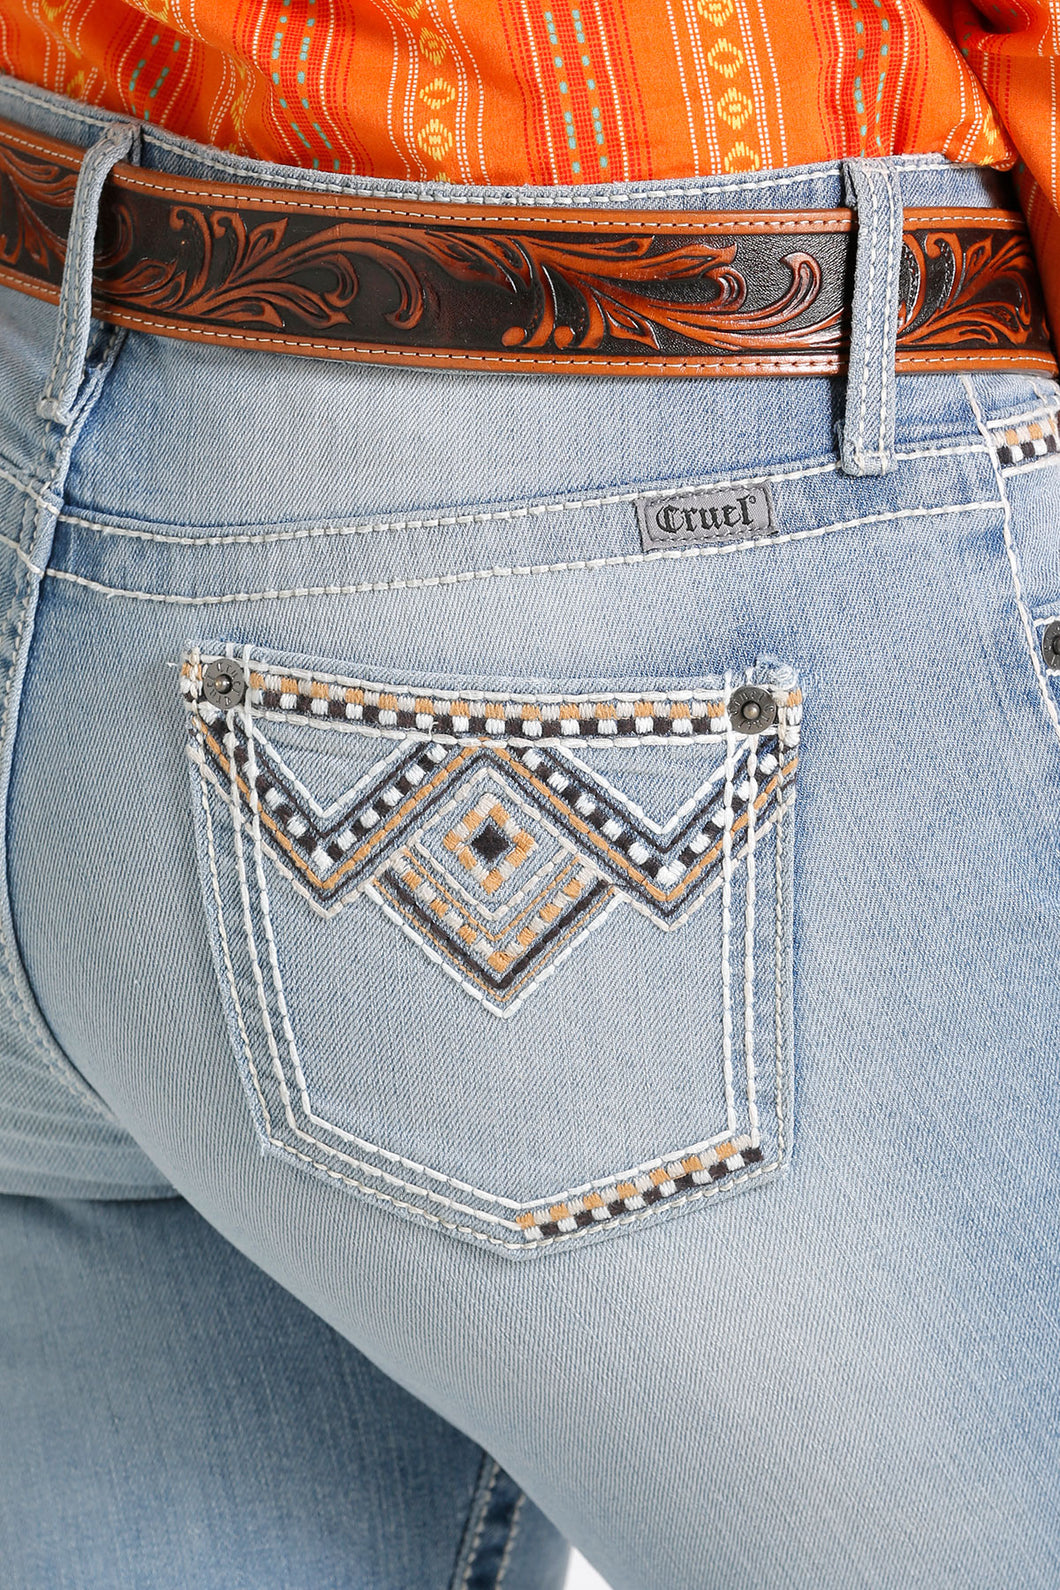 Western Jeans For Women - Temu